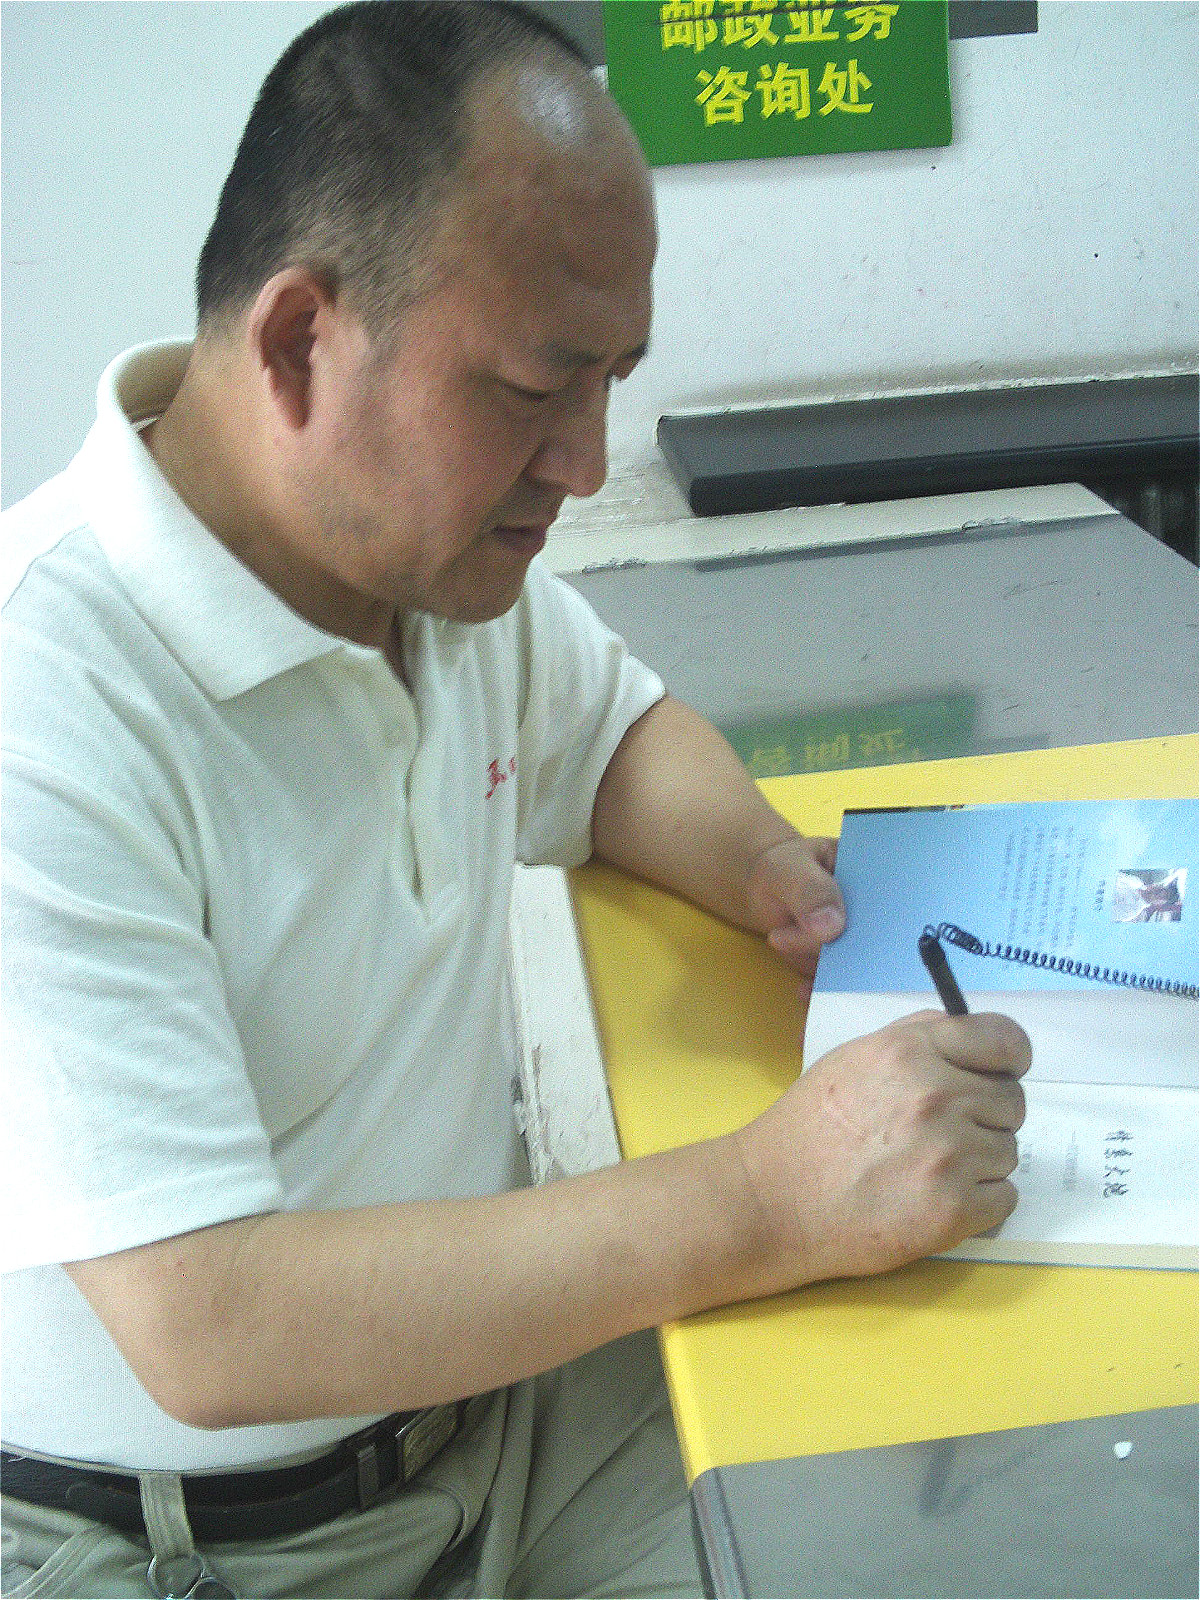 作家劉文韜在郵局為讀者簽名寄書